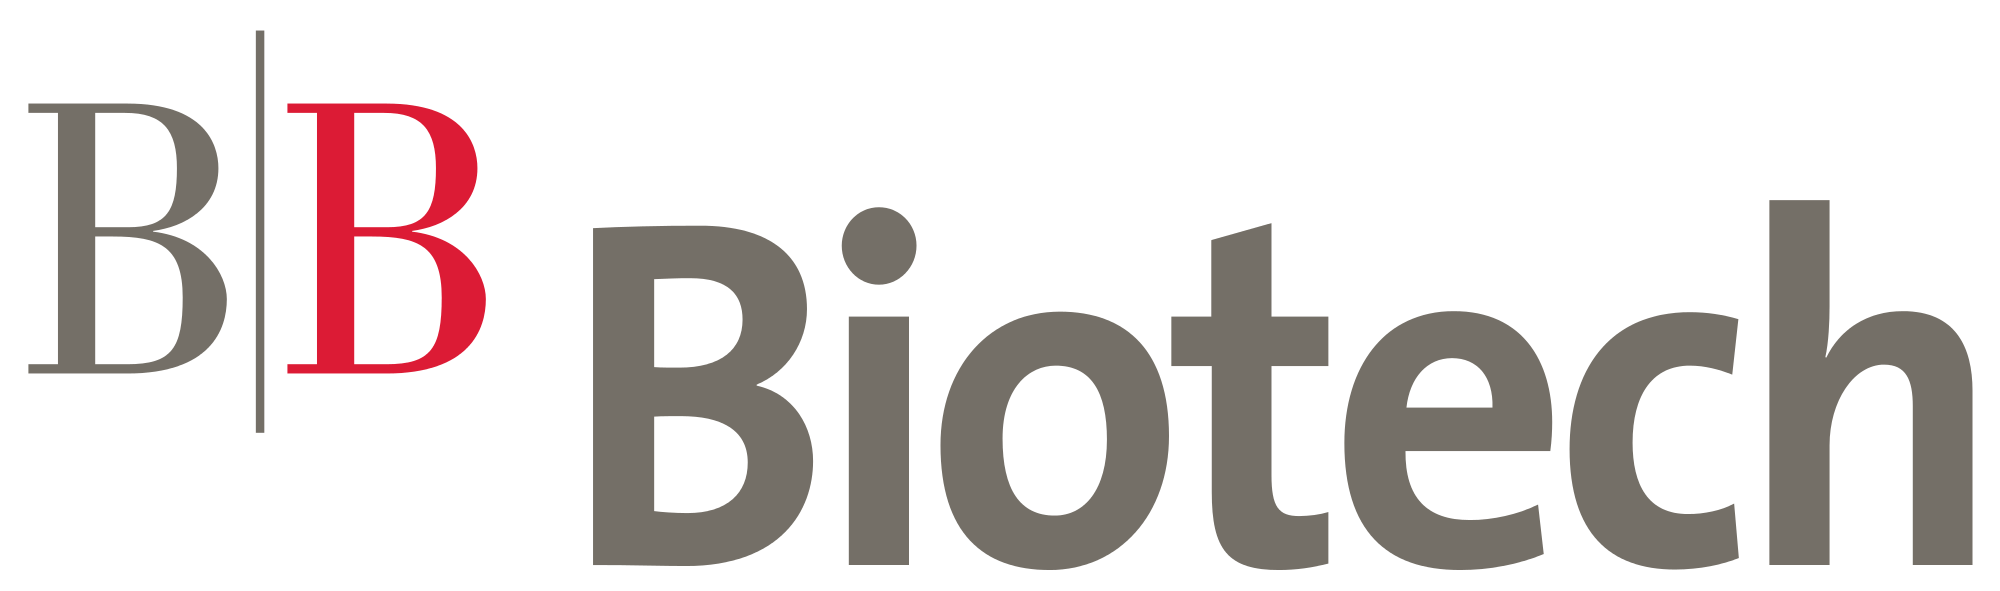 BB Circle Logo - BB Biotech Logo.svg